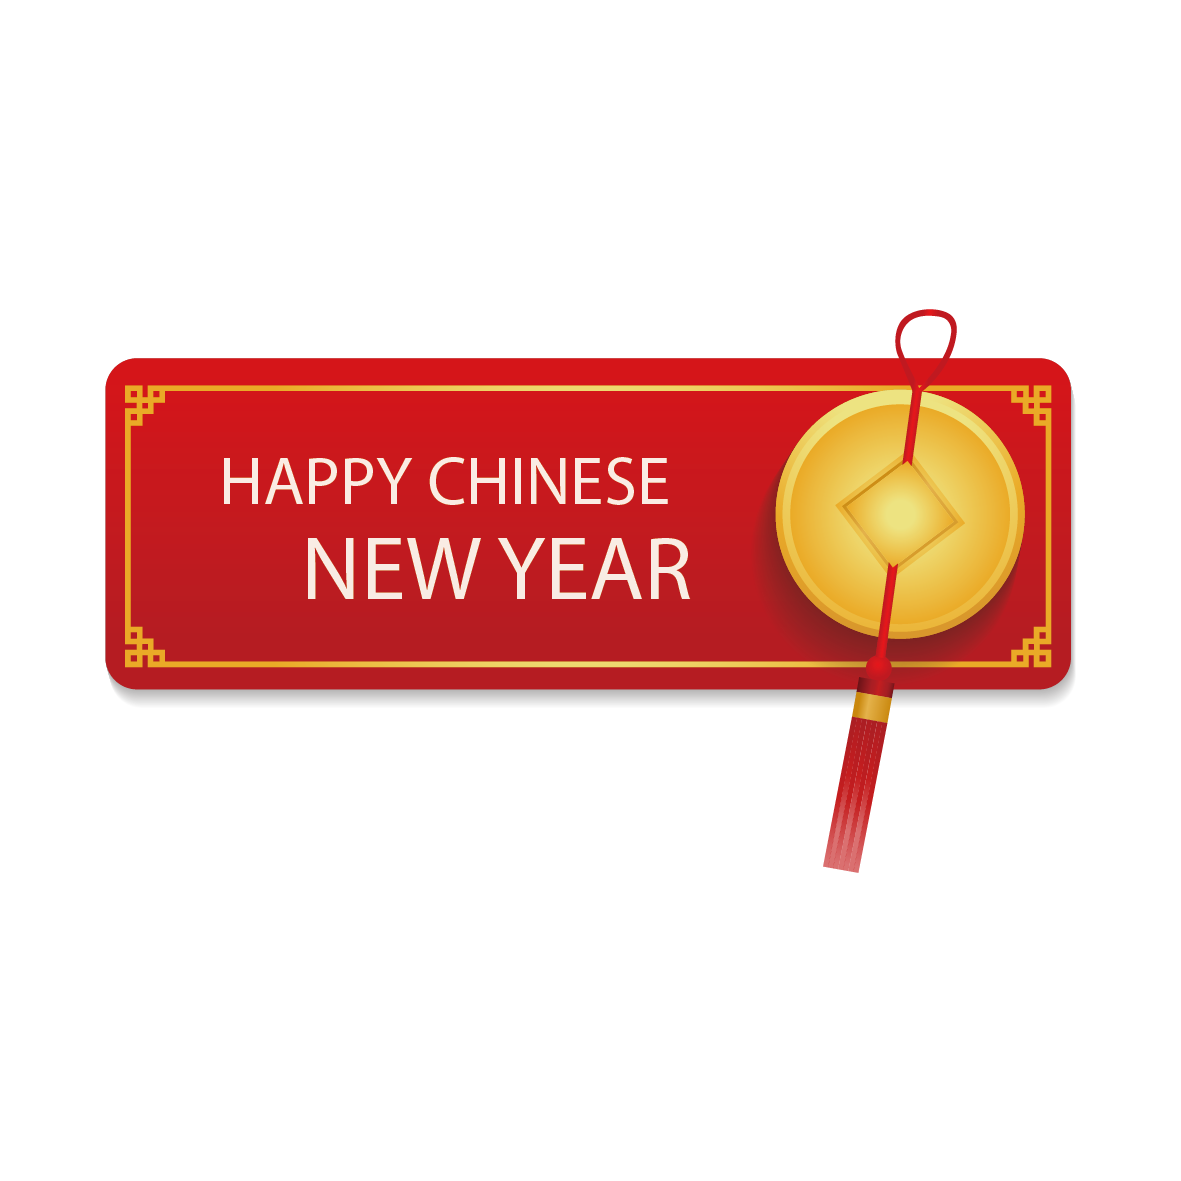 สวัสดีปีใหม่จีนและปีใหม่